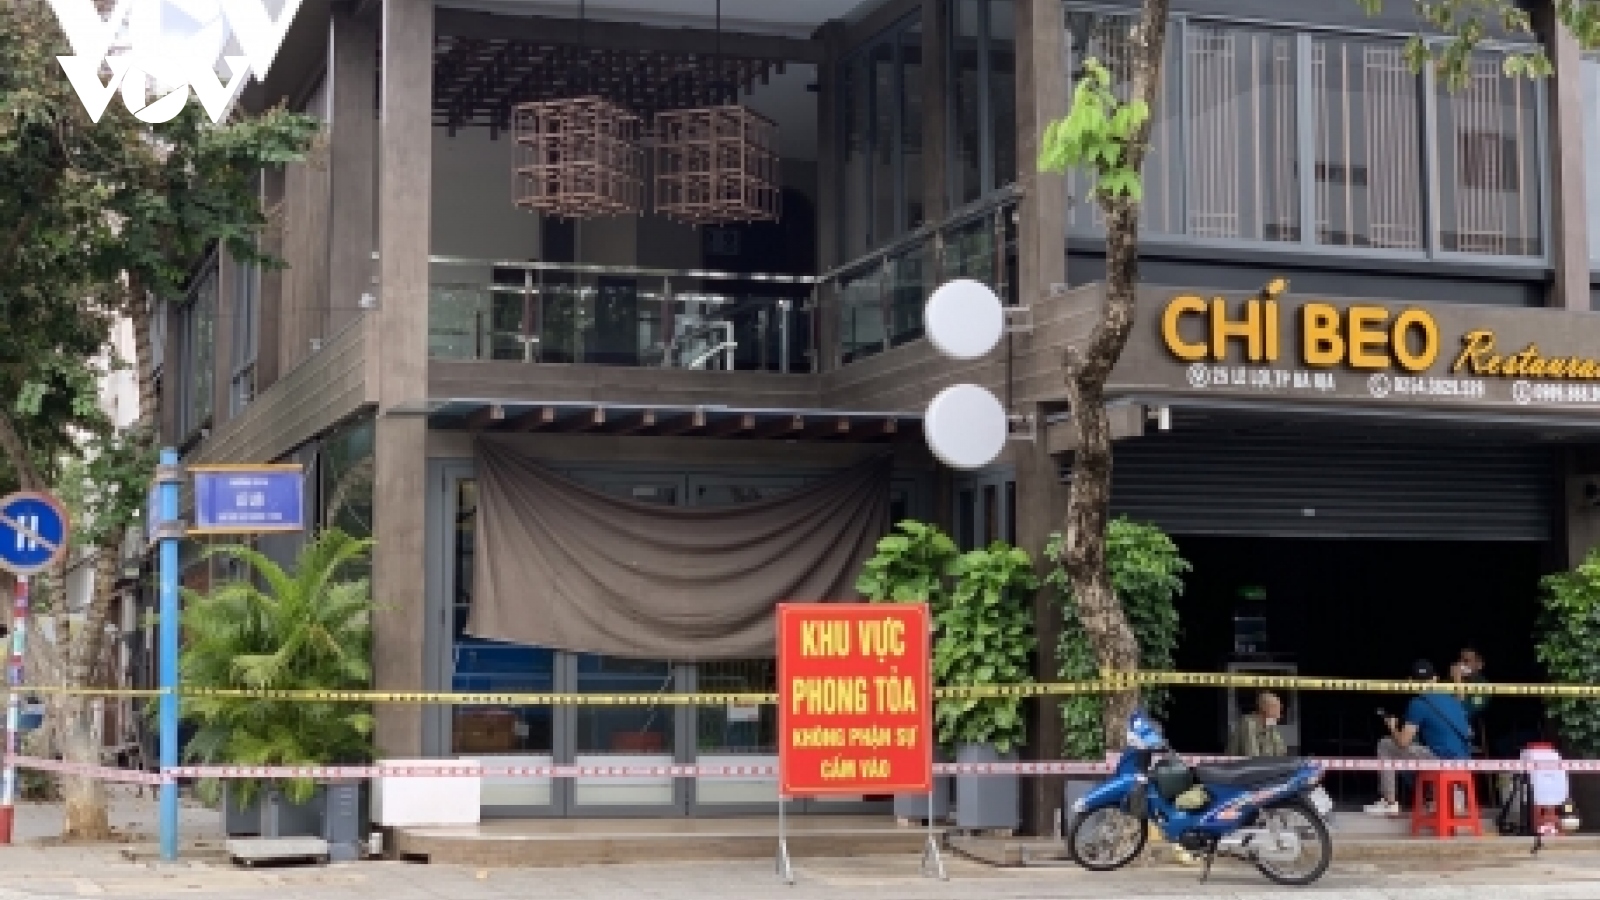 Lén lút hoạt động, một nhân viên quán ăn ở Bà Rịa-Vũng Tàu làm lây lan dịch bệnh